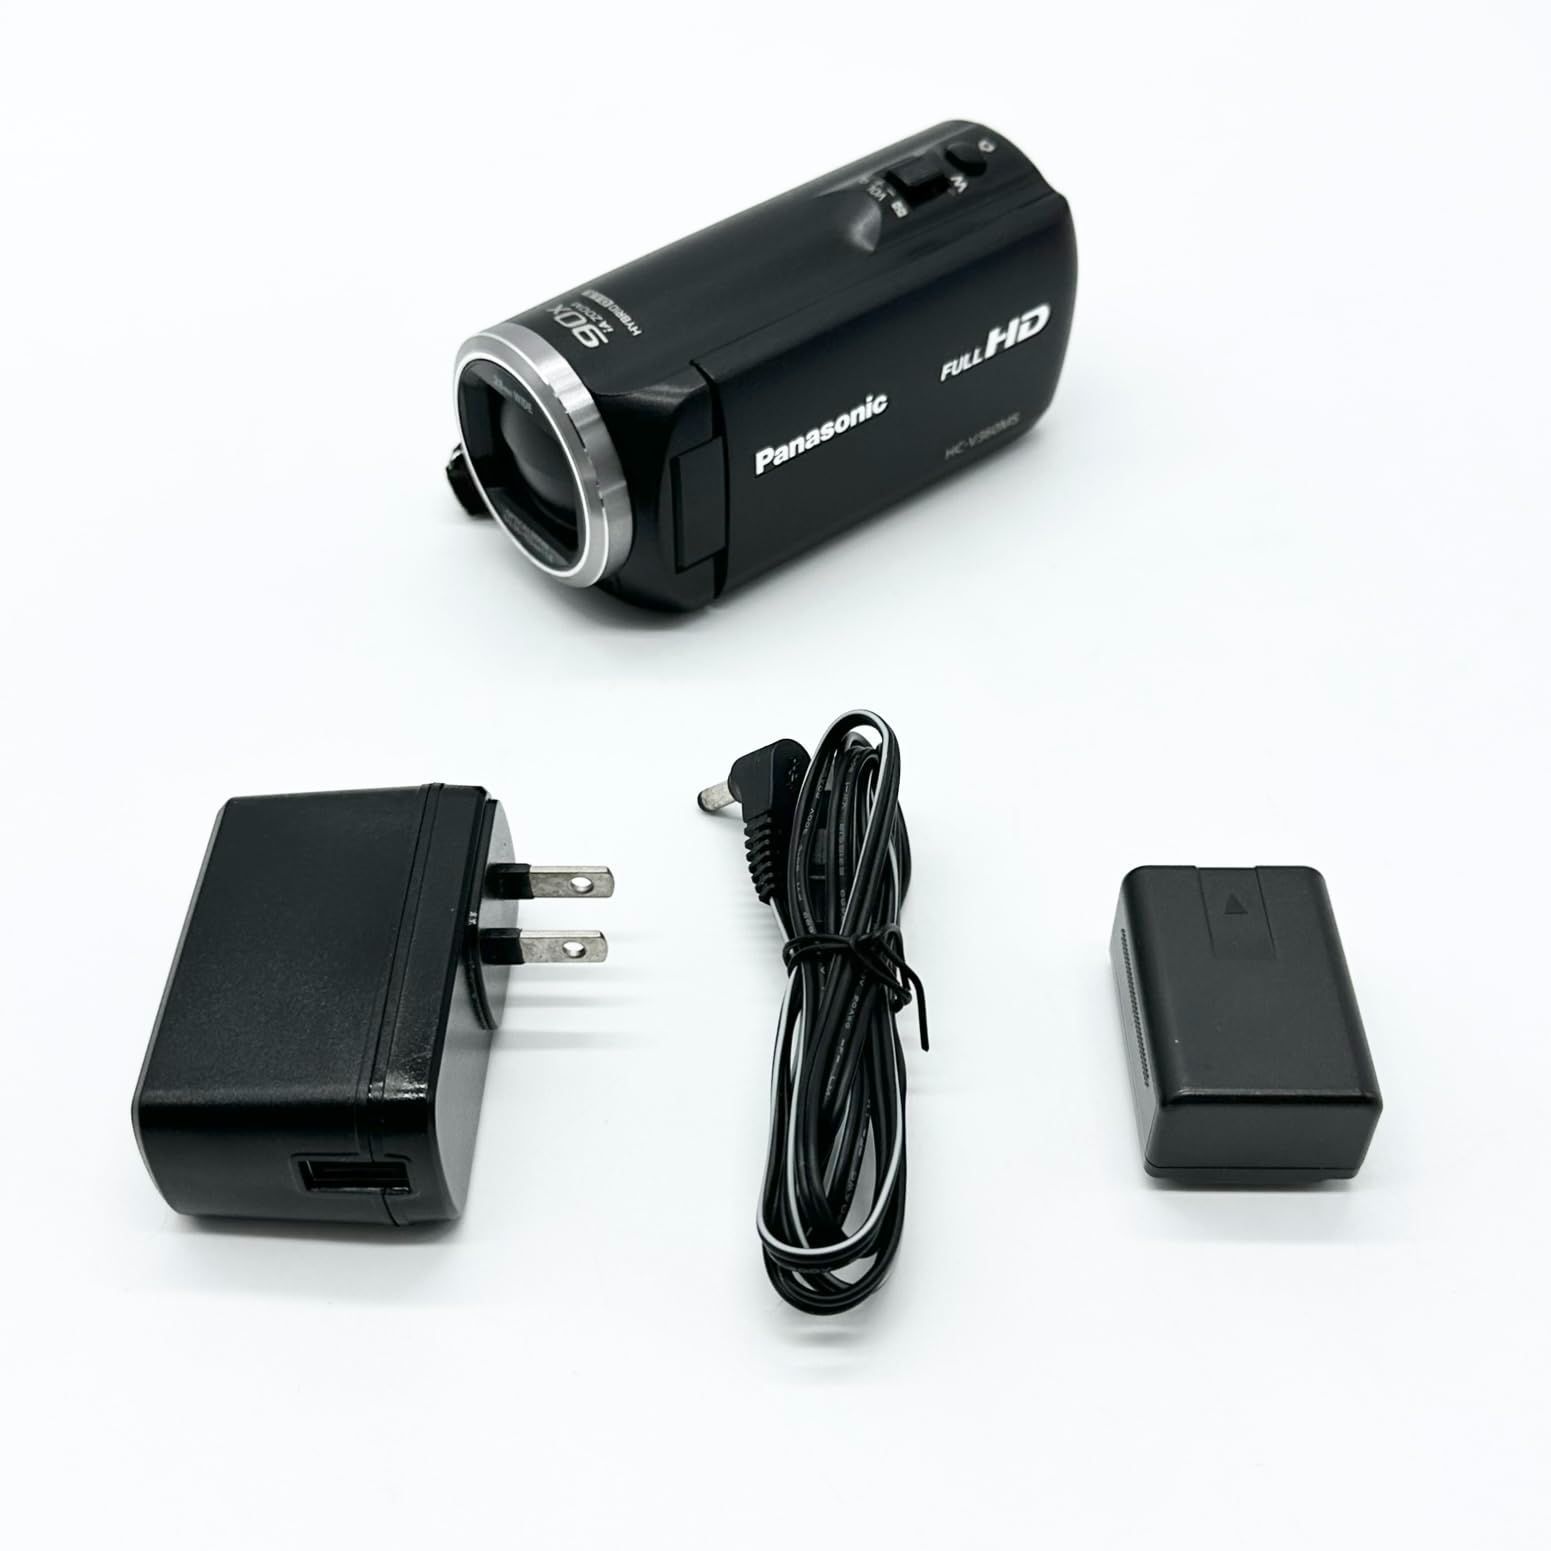 正規代理店 パナソニック HDビデオカメラ V360MS 16GB 高倍率90倍ズーム ブラック HC-V360MS-K 19474.29円 カメラ 